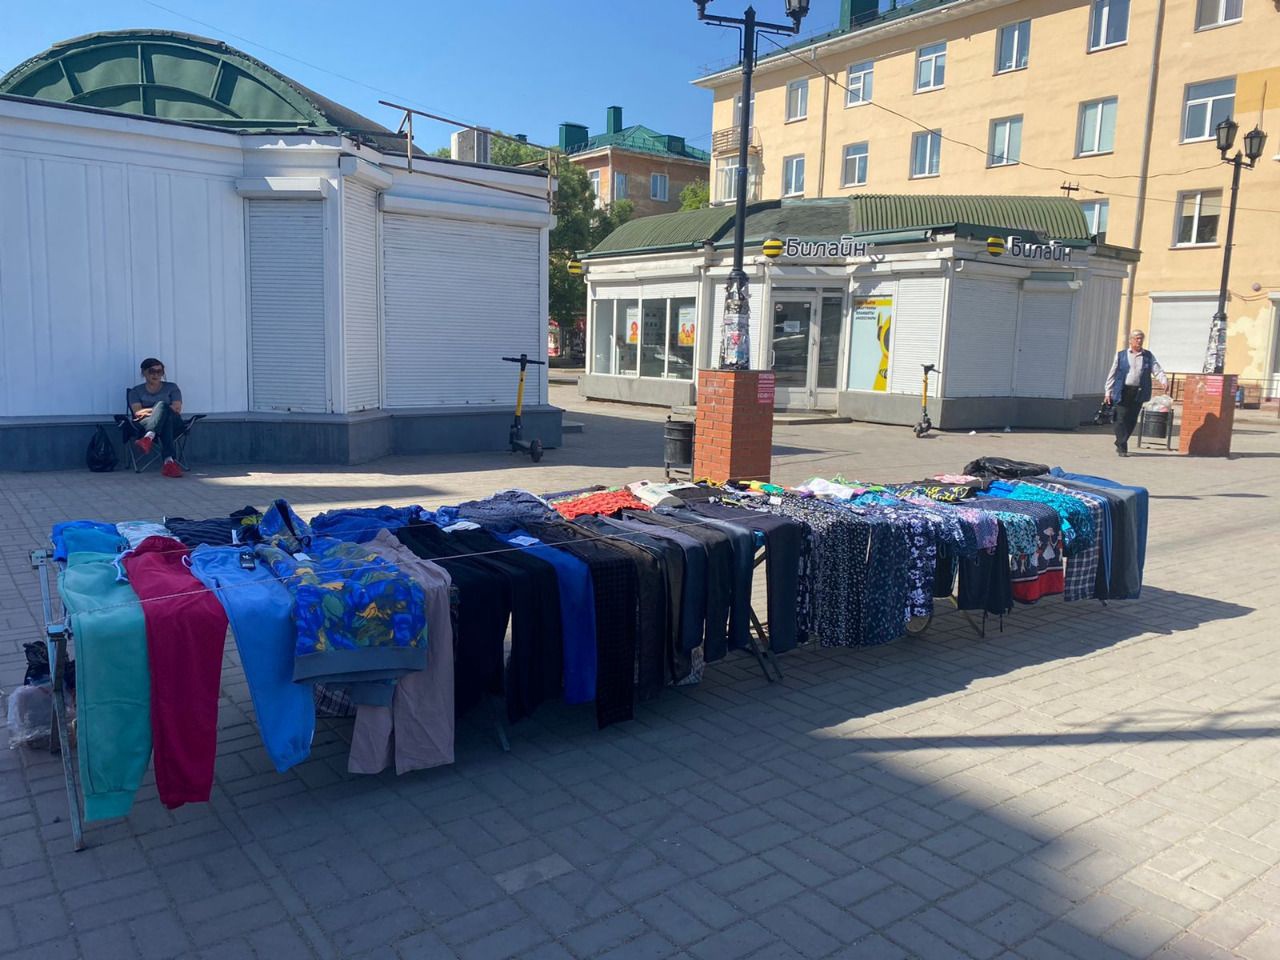 Чиновники узнали, что в Нефтяниках на улице продают постельное белье #Омск #Общество #Сегодня